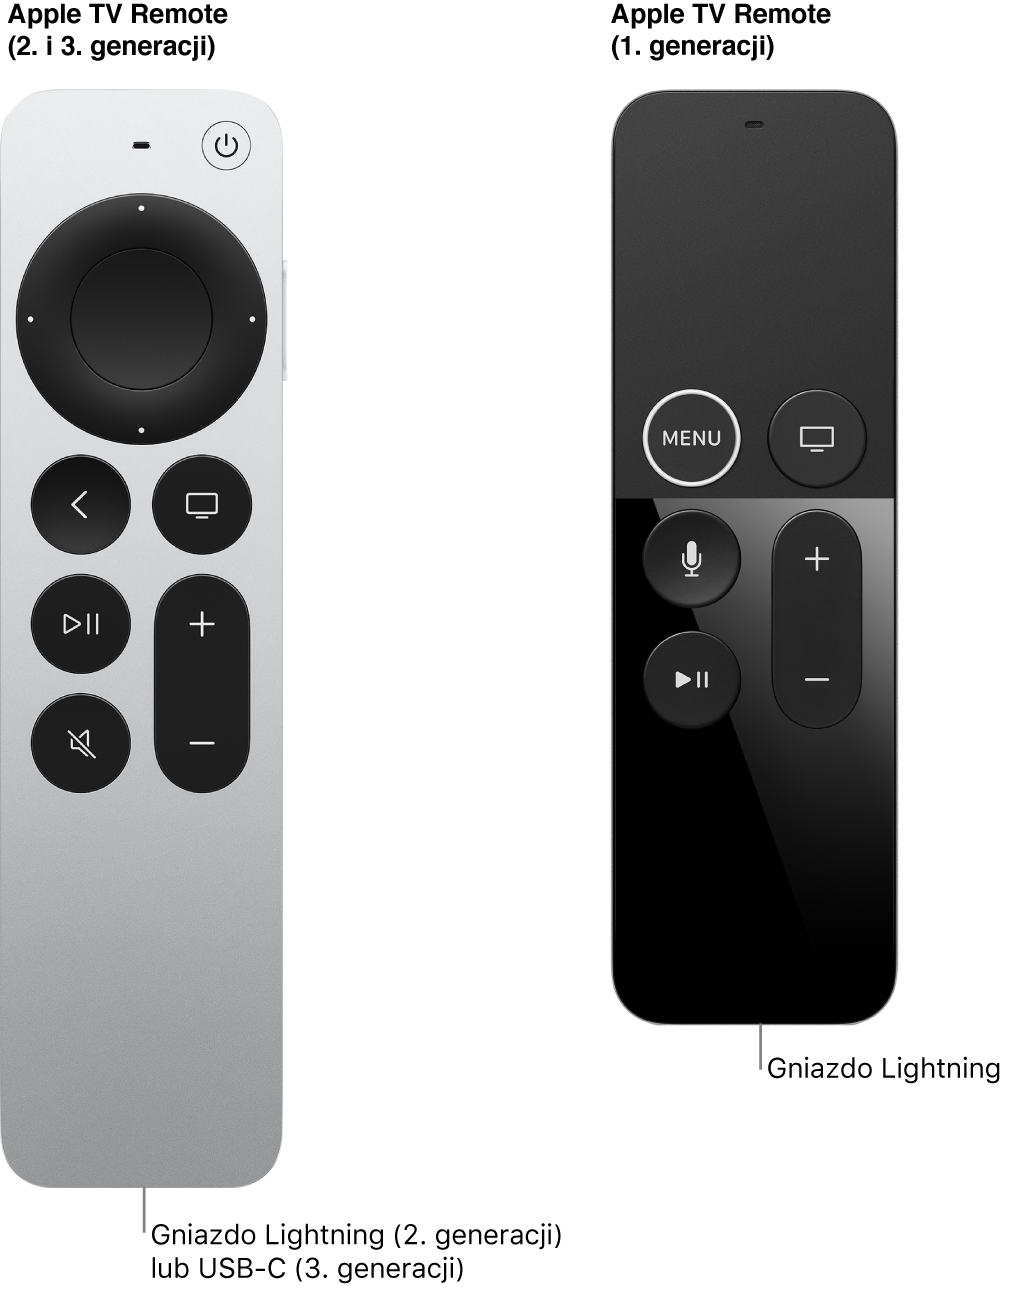 Ilustracja przedstawiająca gniazdo Lightning pilota Apple TV Remote (2. generacji) oraz pilota Apple TV Remote (1. generacji).